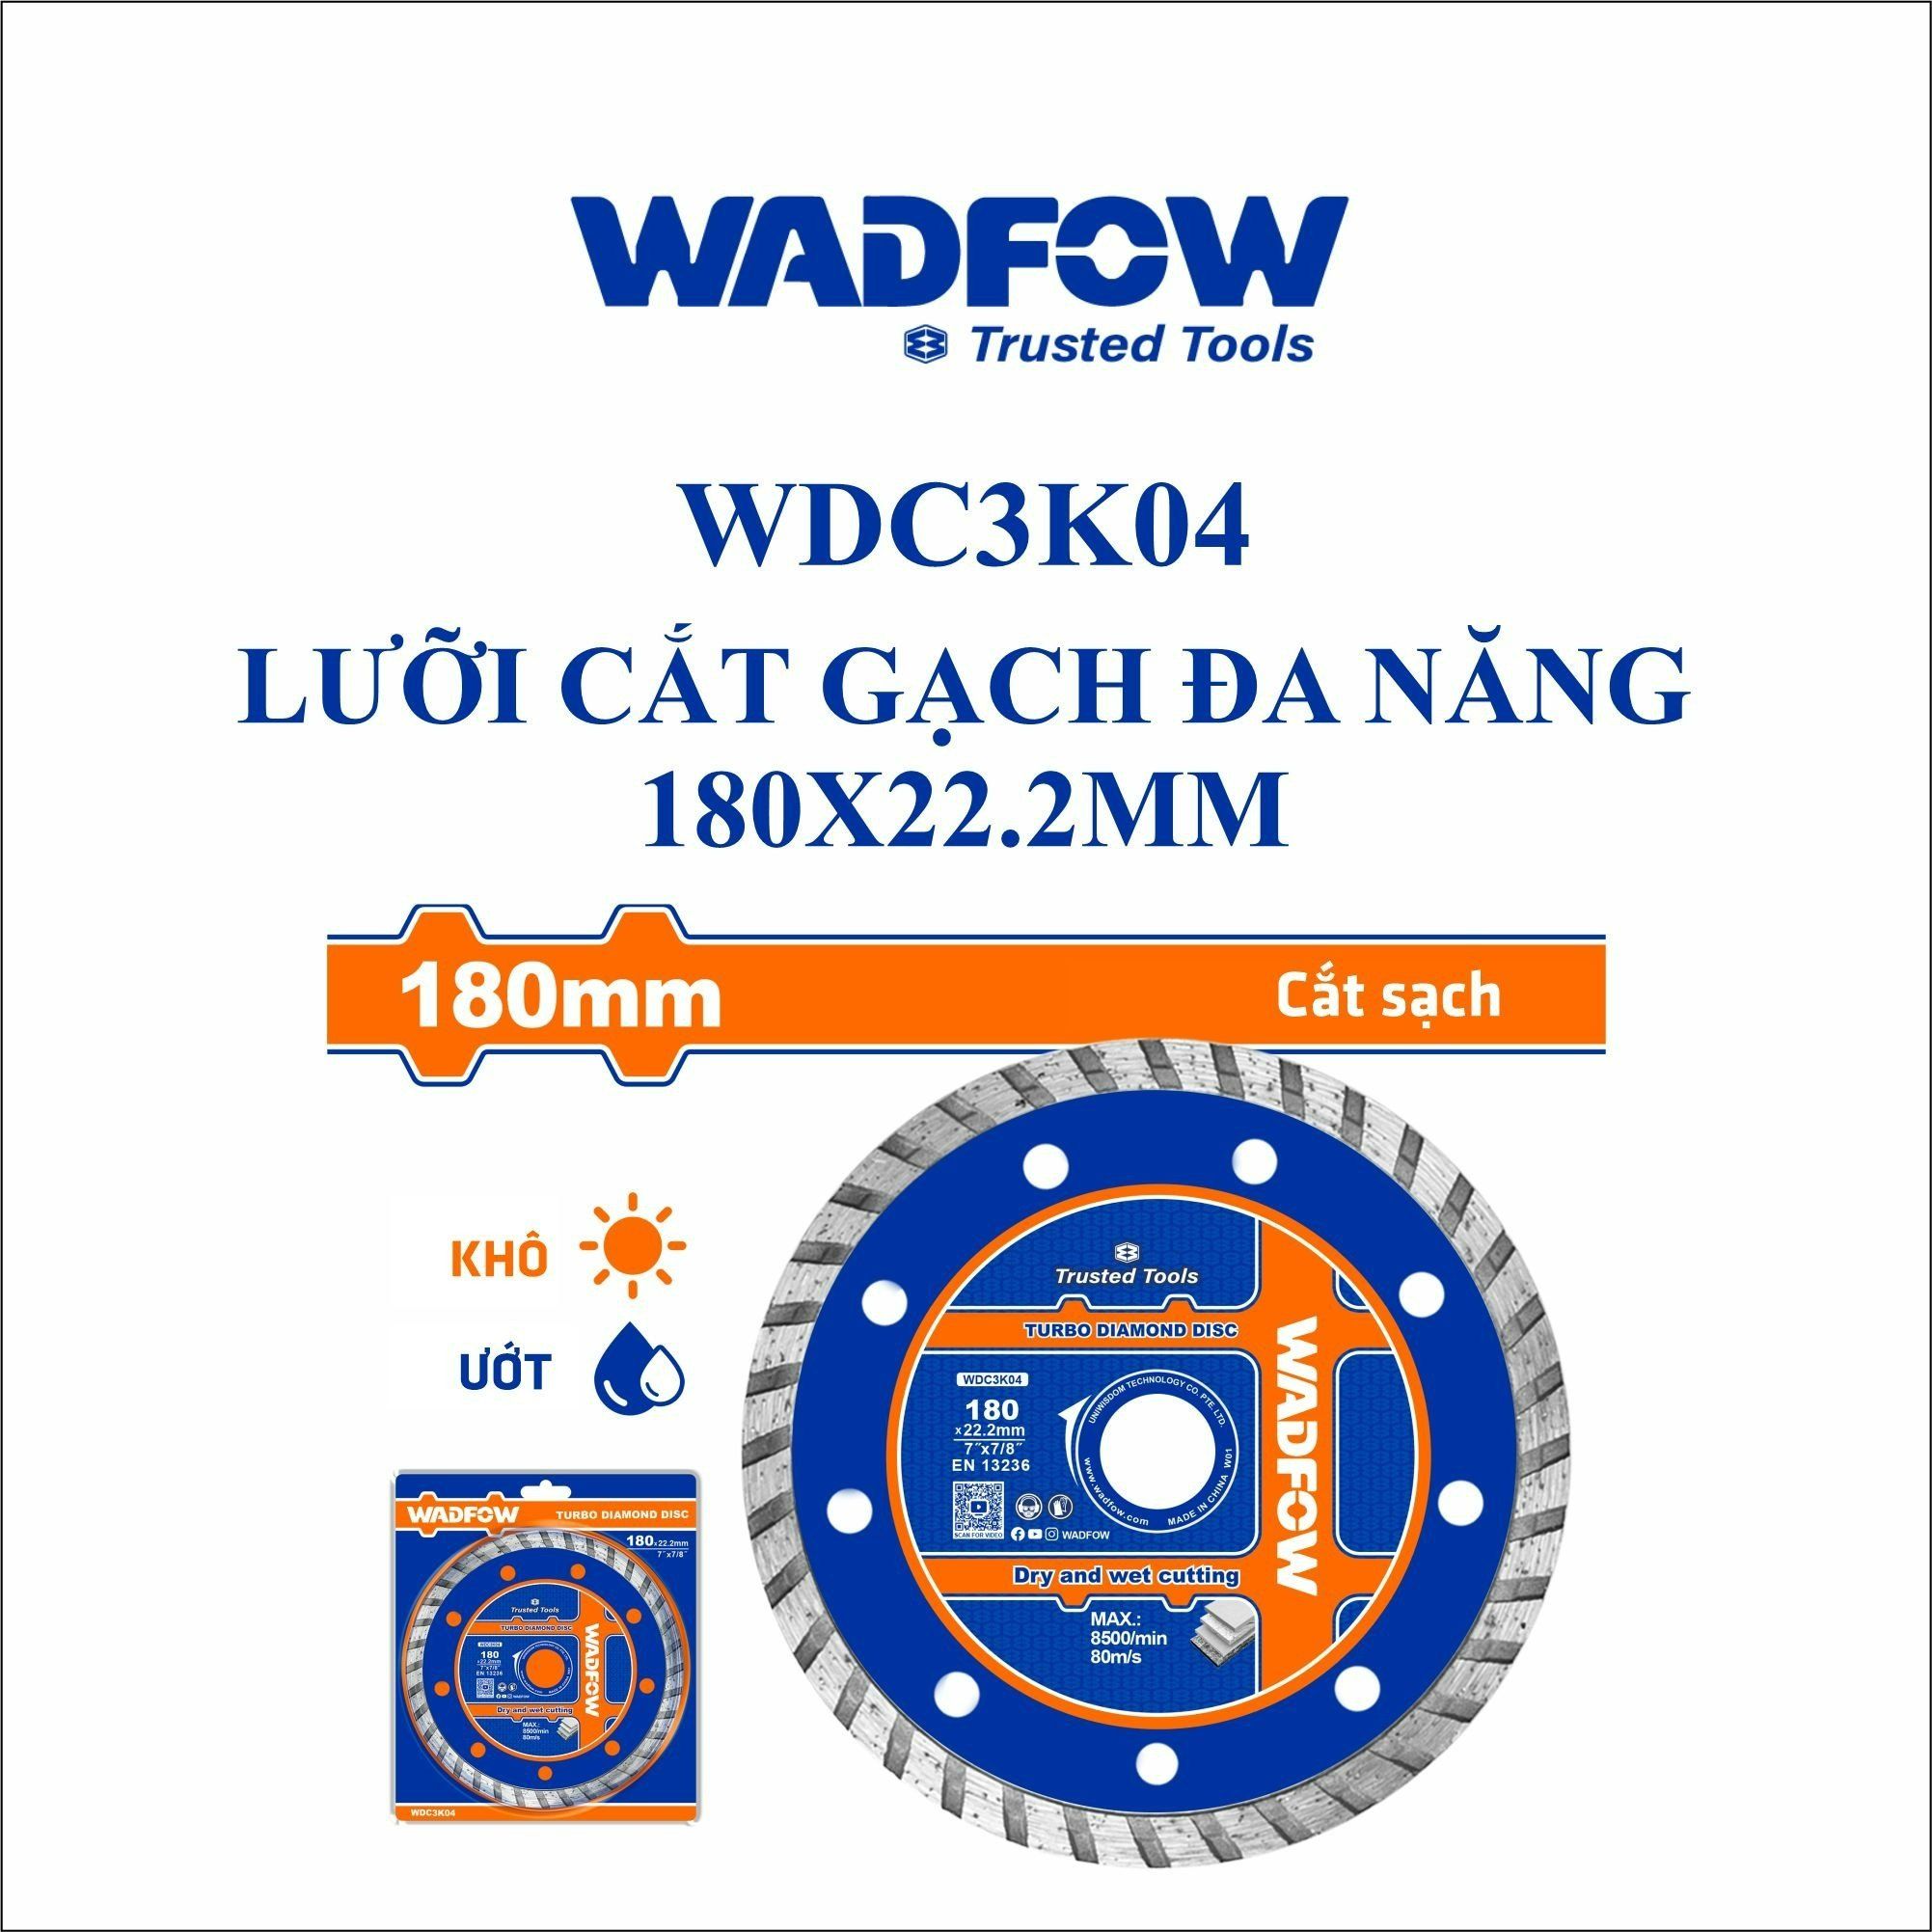  Lưỡi cắt gạch đa năng 180x22.2mm WADFOW WDC3K04 